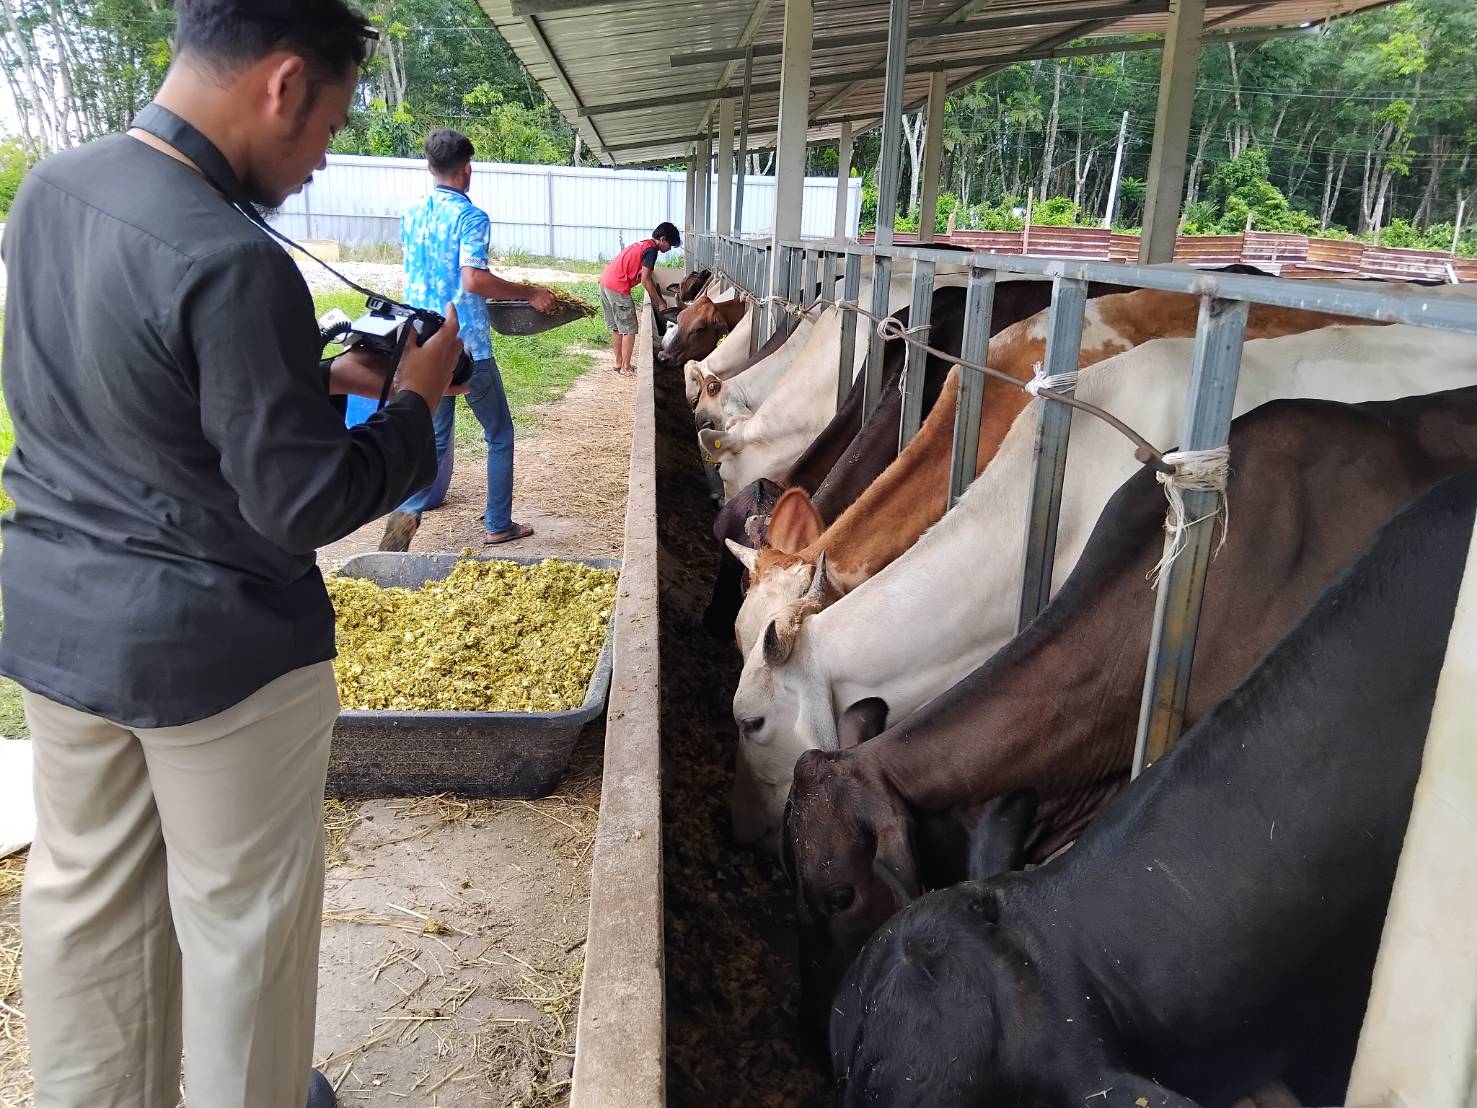 รู้จัก “Bangkok Halal Beef” ฟาร์มโคขุนเกรดพรีเมียม ขุนวัวด้วย “เปลือกทุเรียนหมัก”